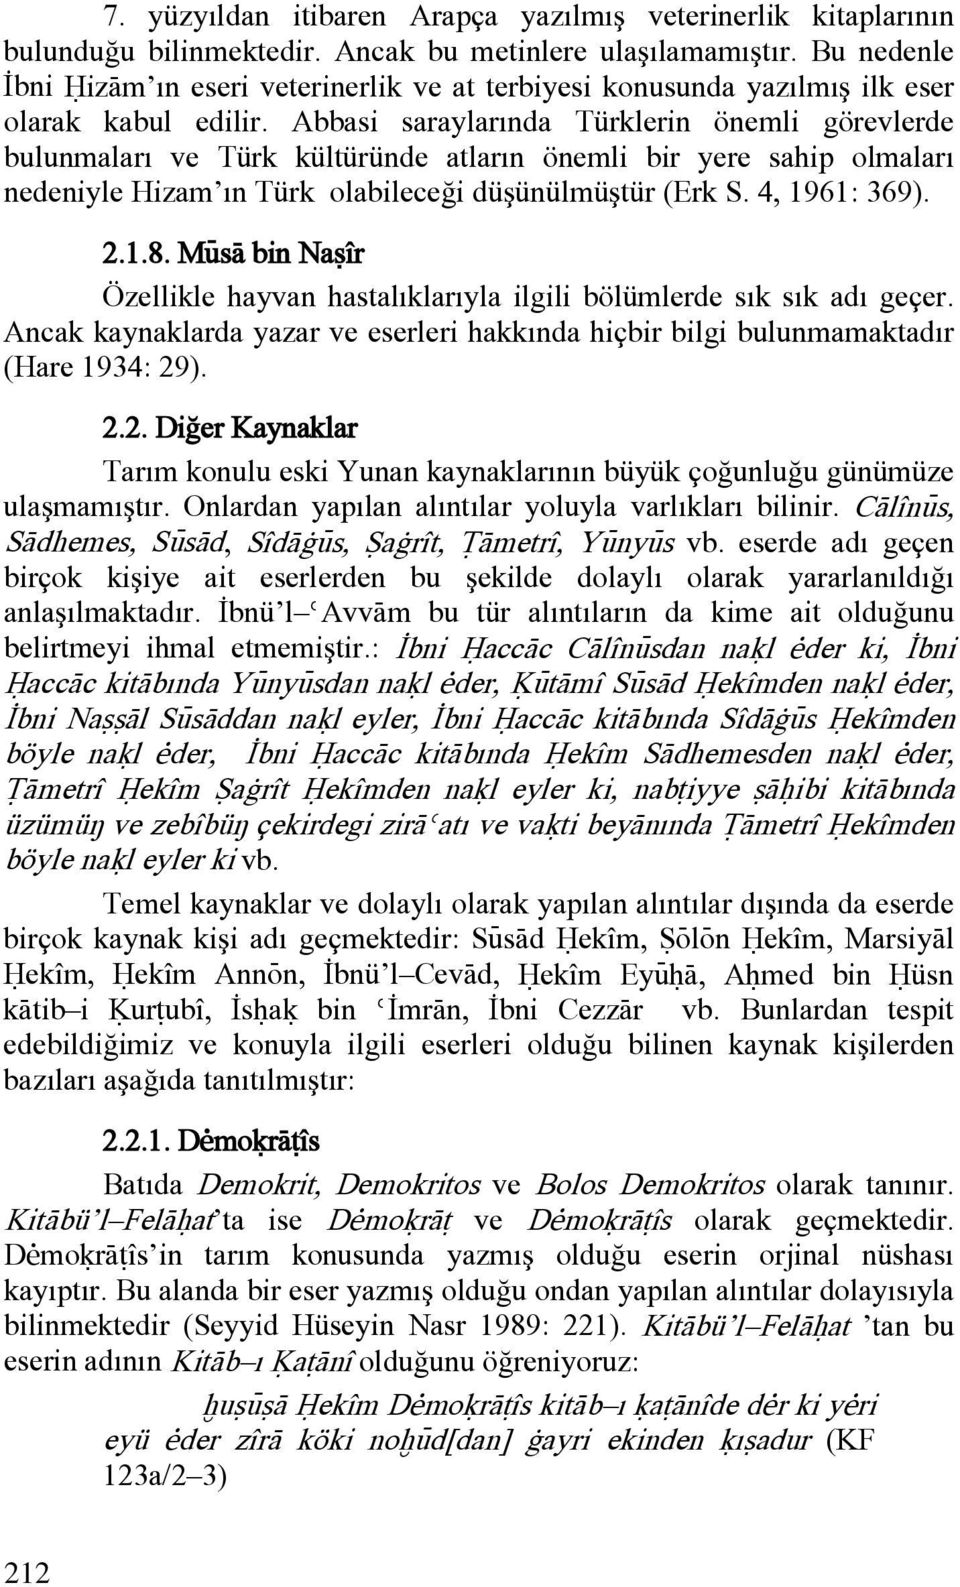 Abbasi saraylarında Türklerin önemli görevlerde bulunmaları ve Türk kültüründe atların önemli bir yere sahip olmaları nedeniyle Hizam ın Türk olabileceği düşünülmüştür (Erk S. 4, 1961: 369). 2.1.8.